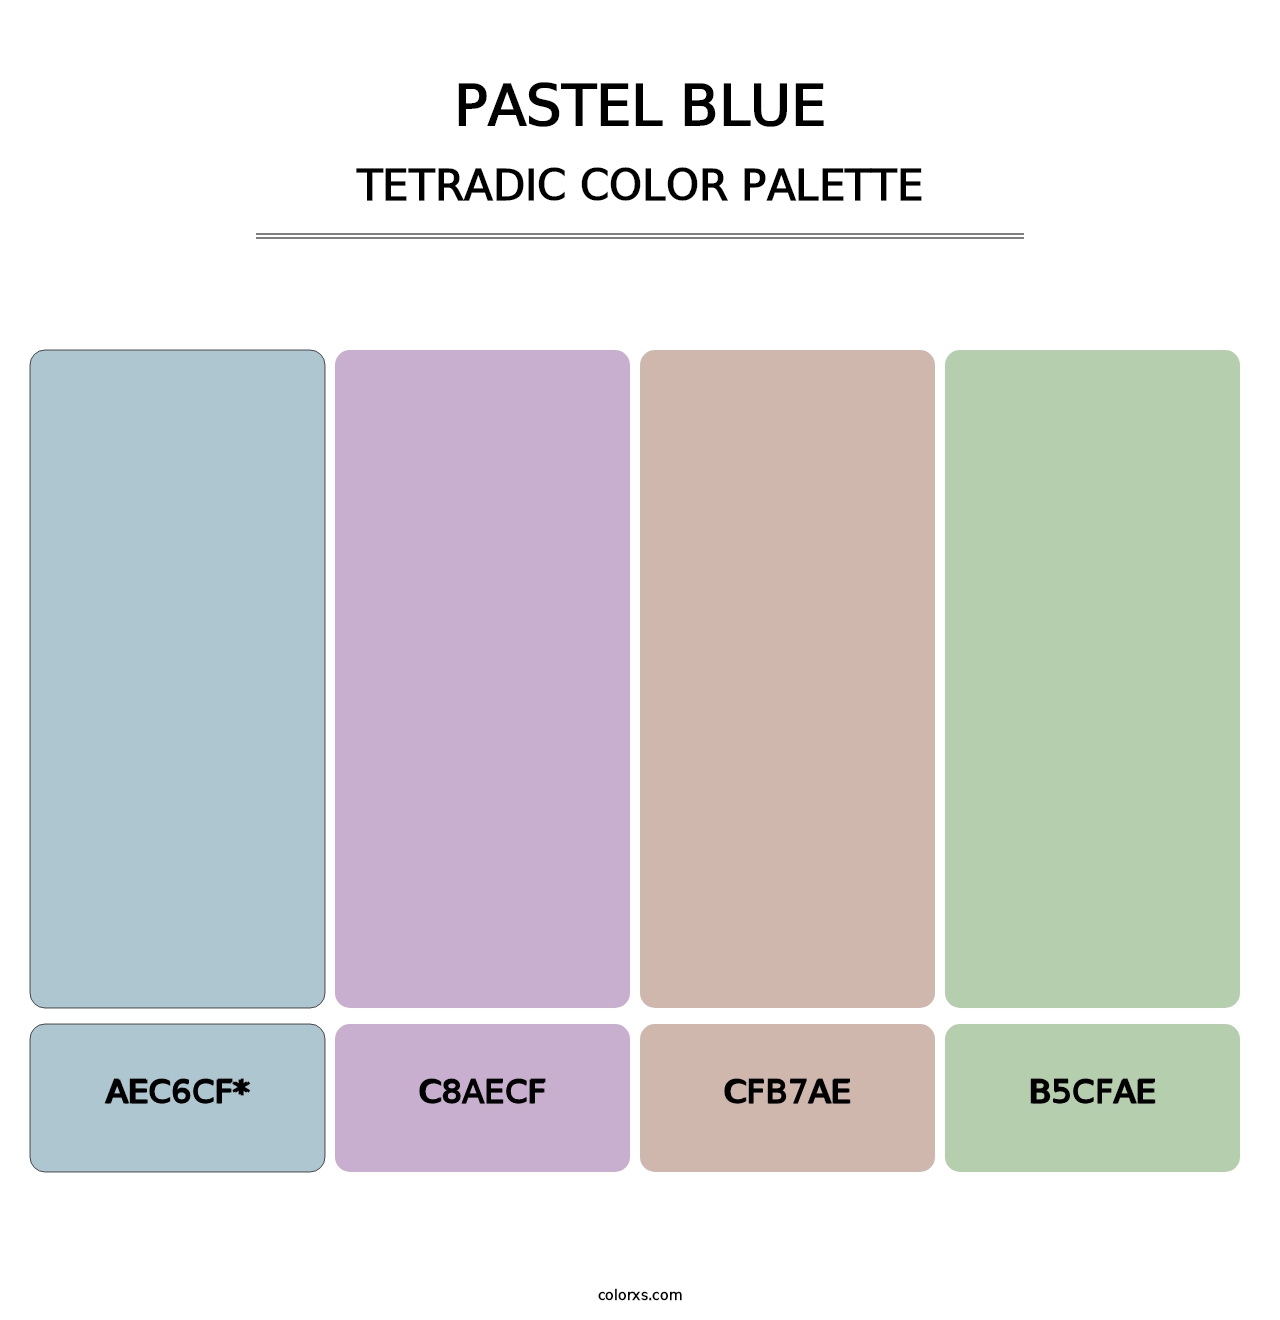 Pastel Blue - Tetradic Color Palette